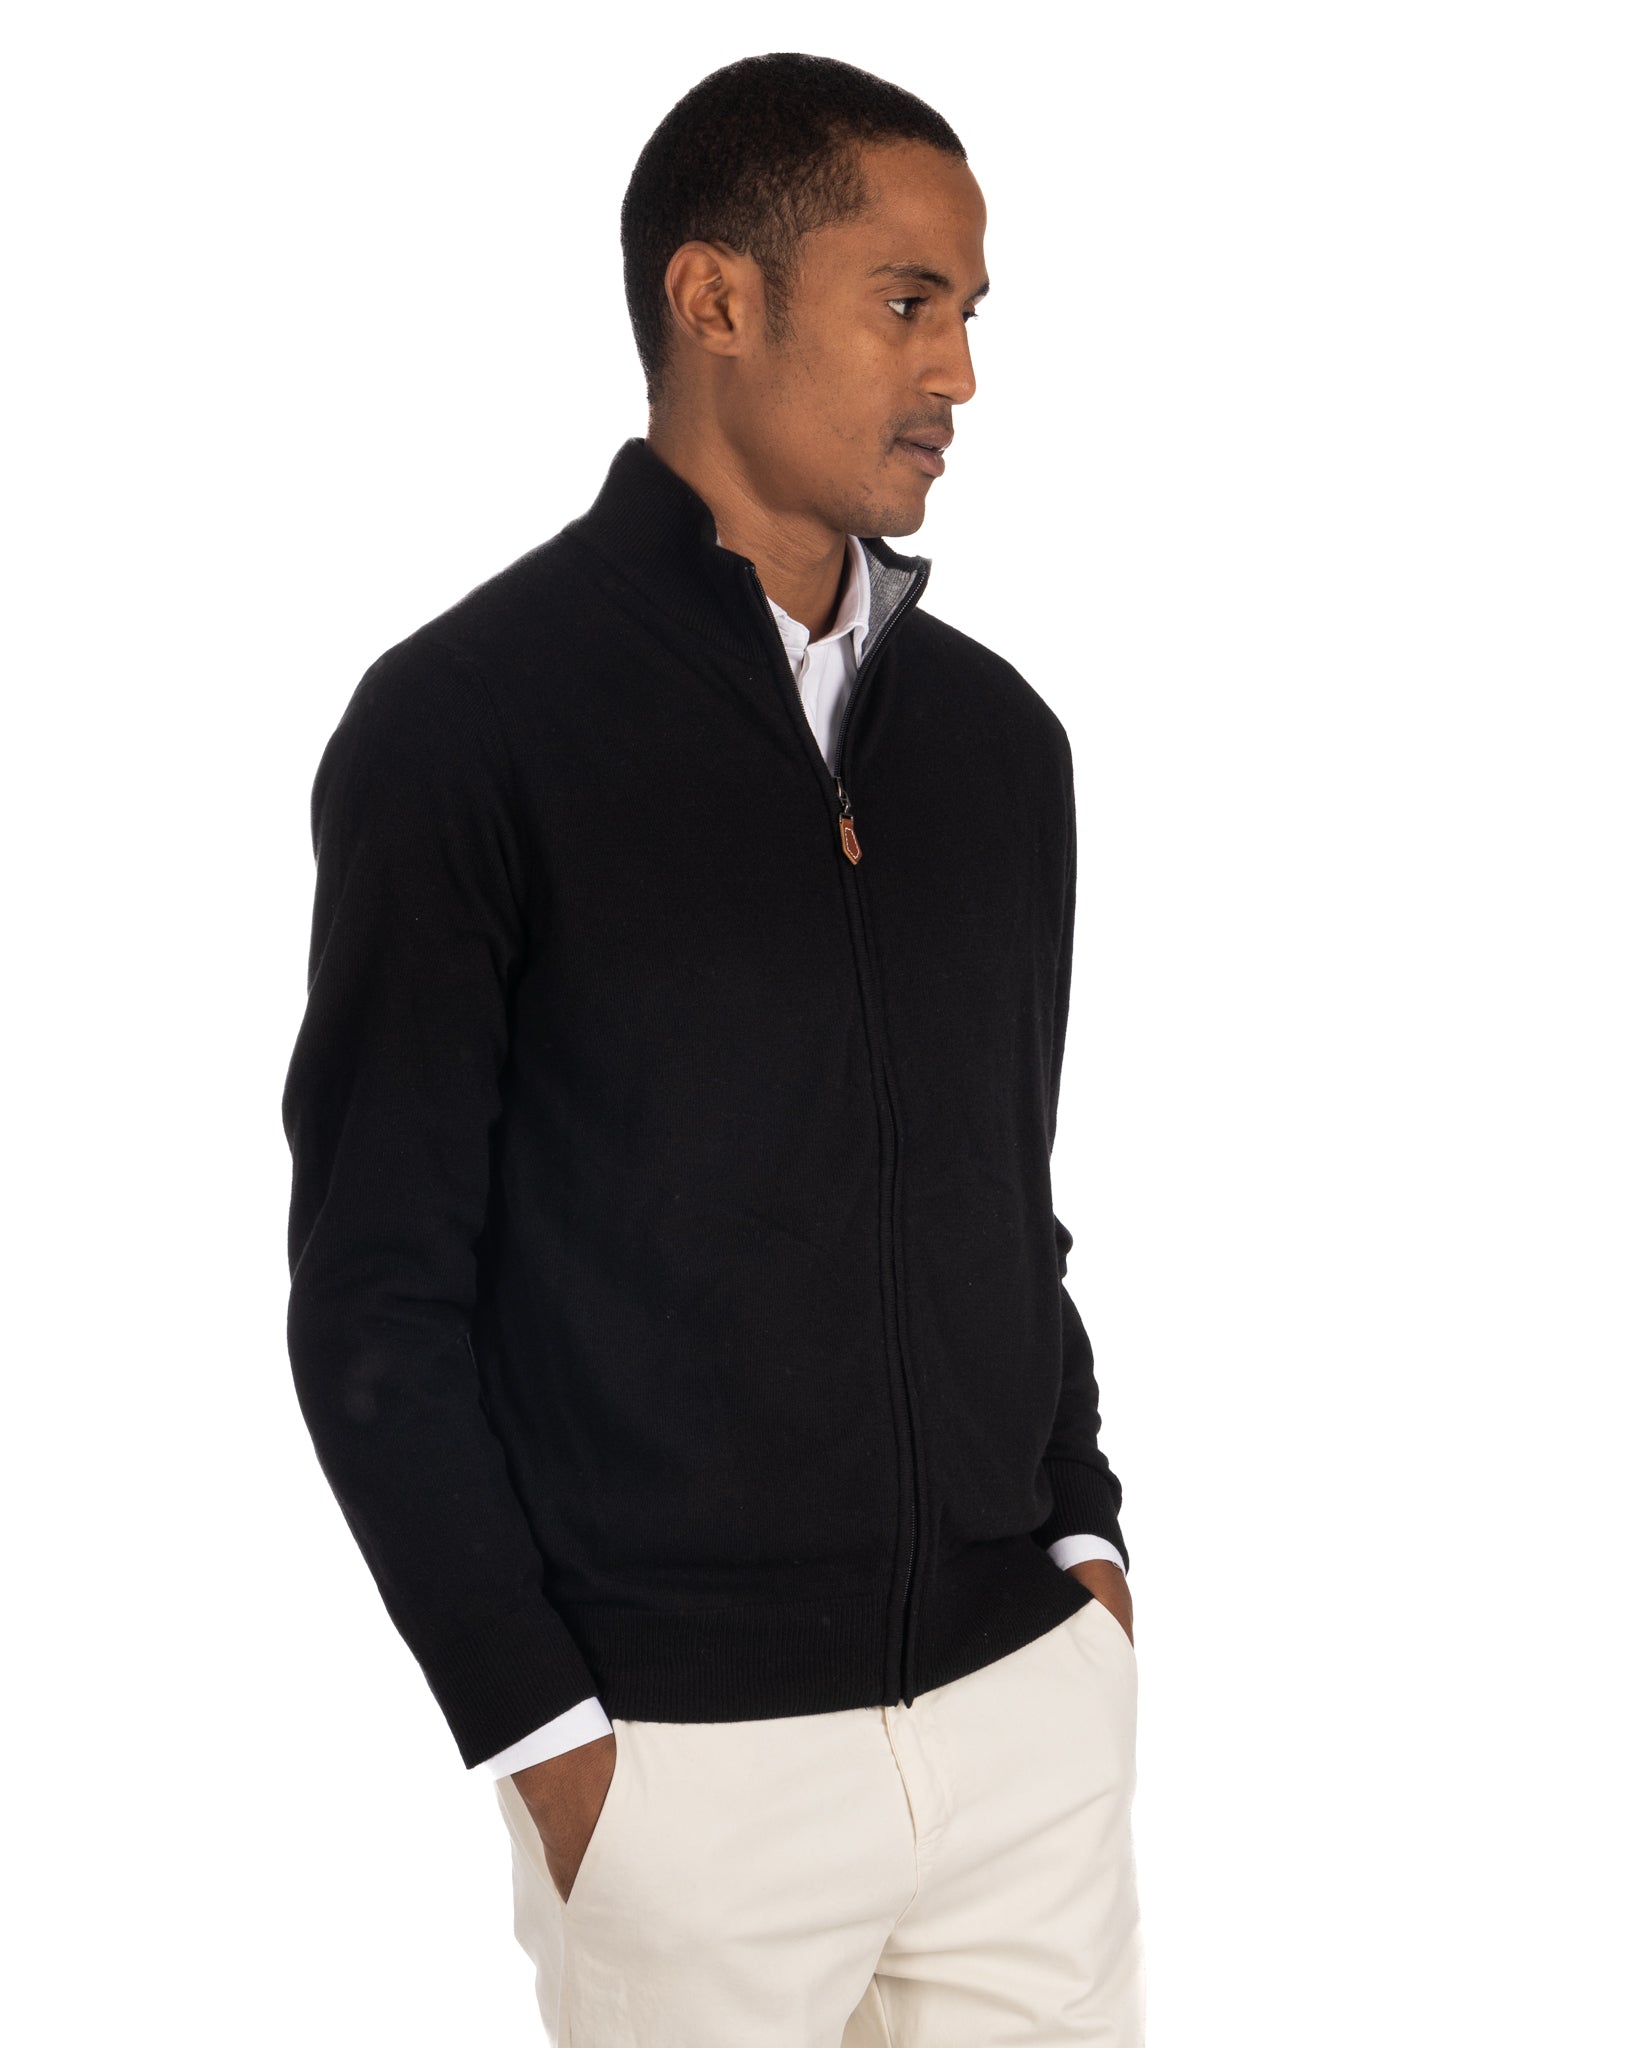 Matt - black full zip sweater in cashmere blend